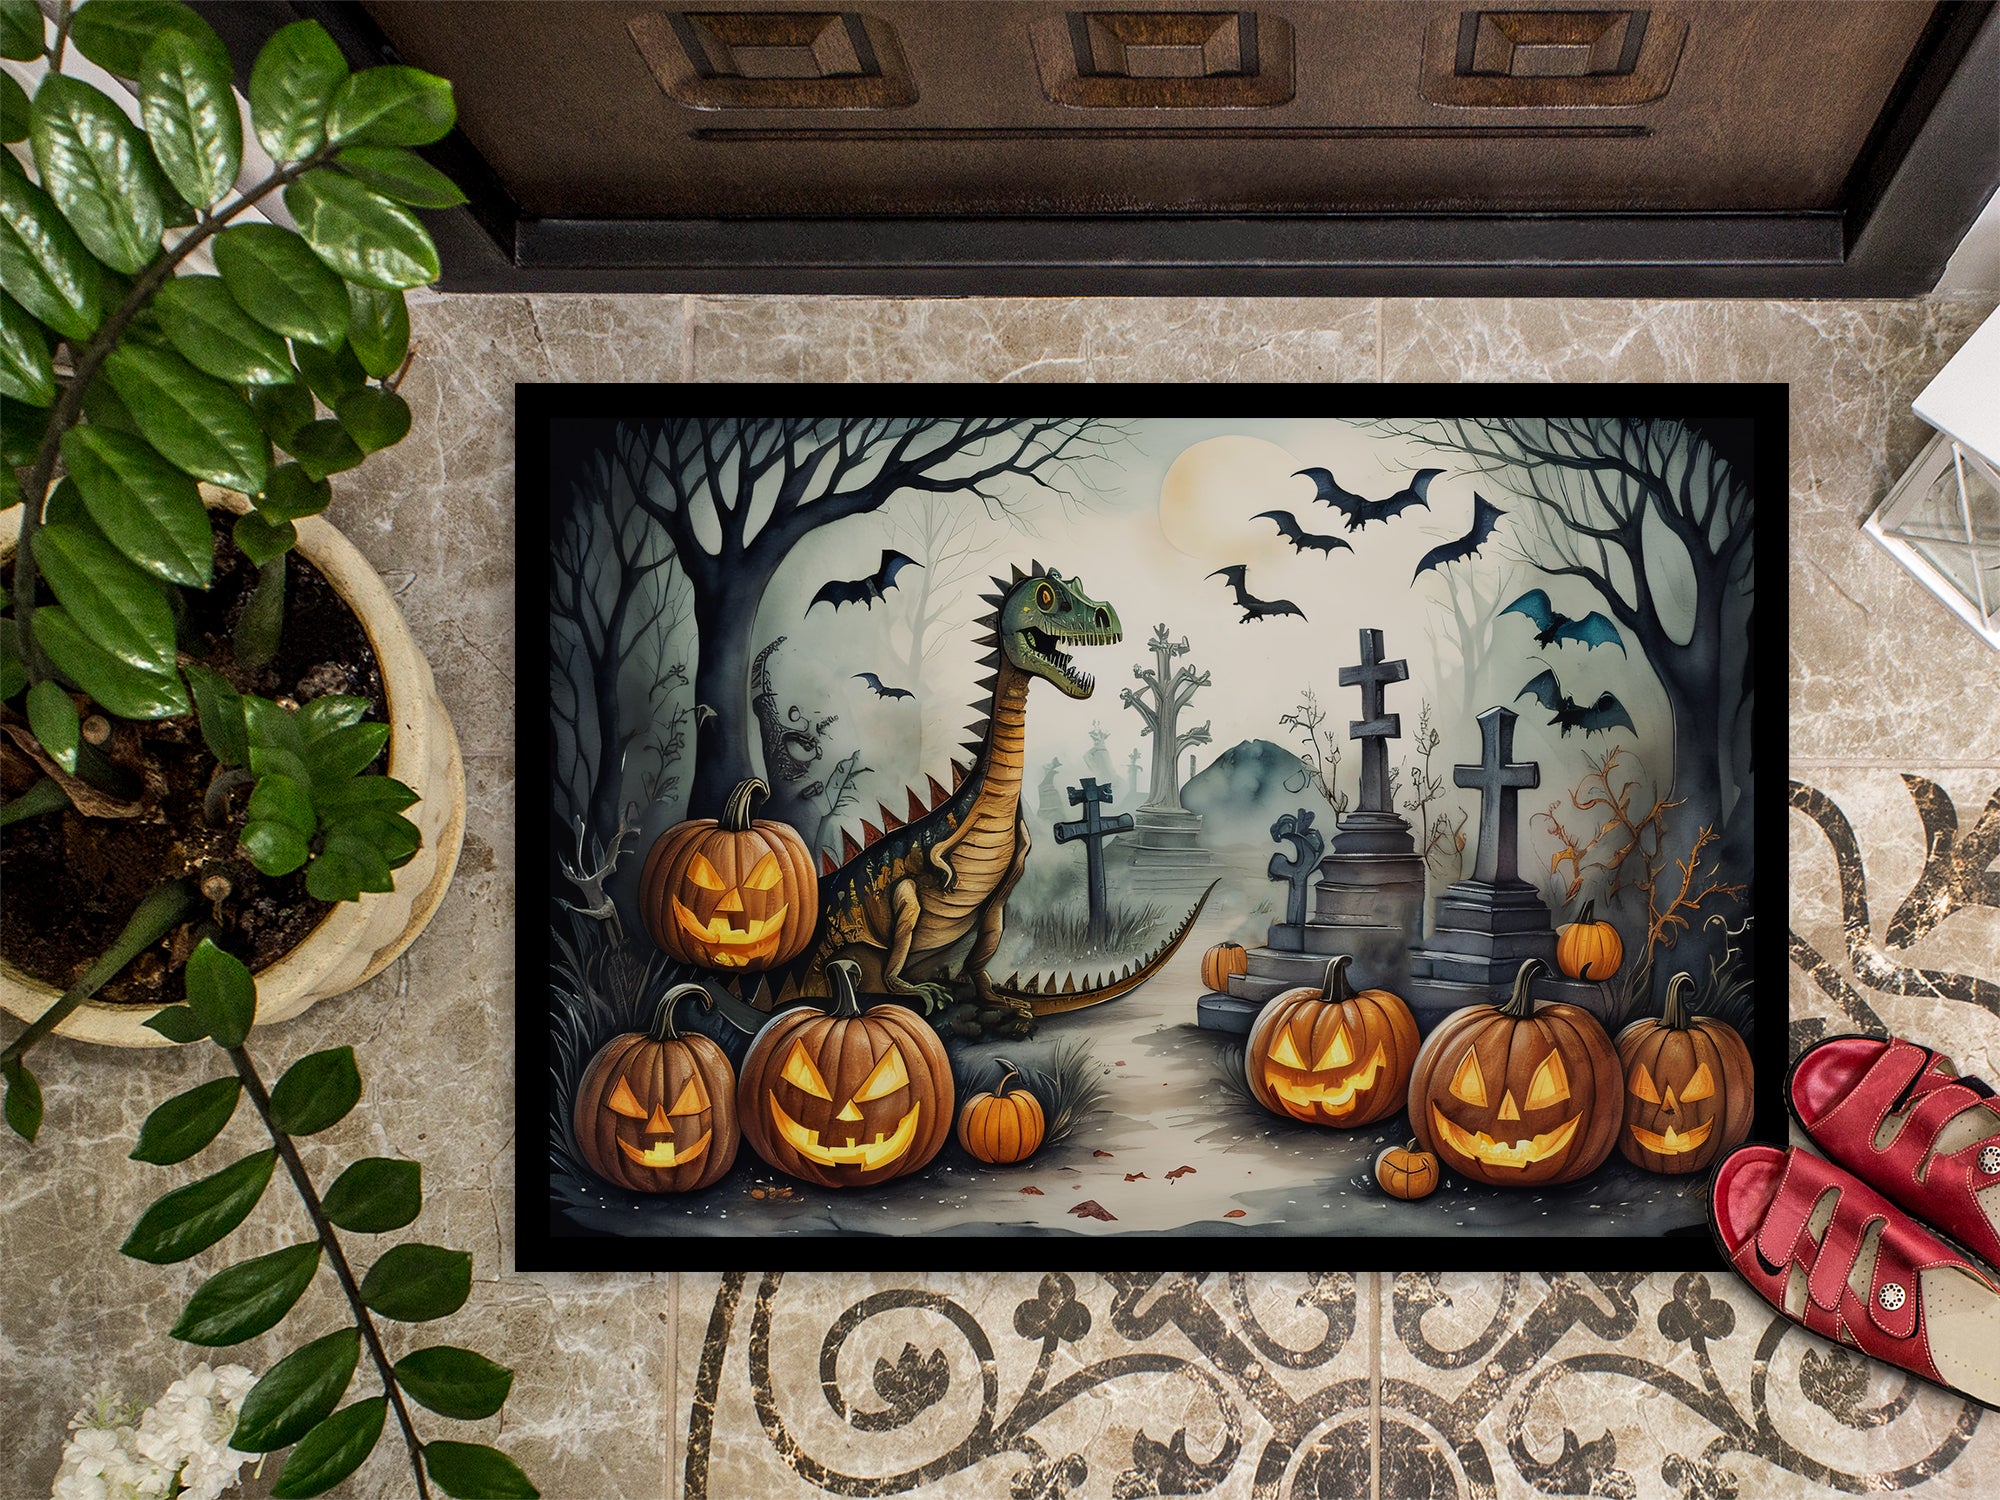 Dinosaurs Spooky Halloween Doormat 18x27